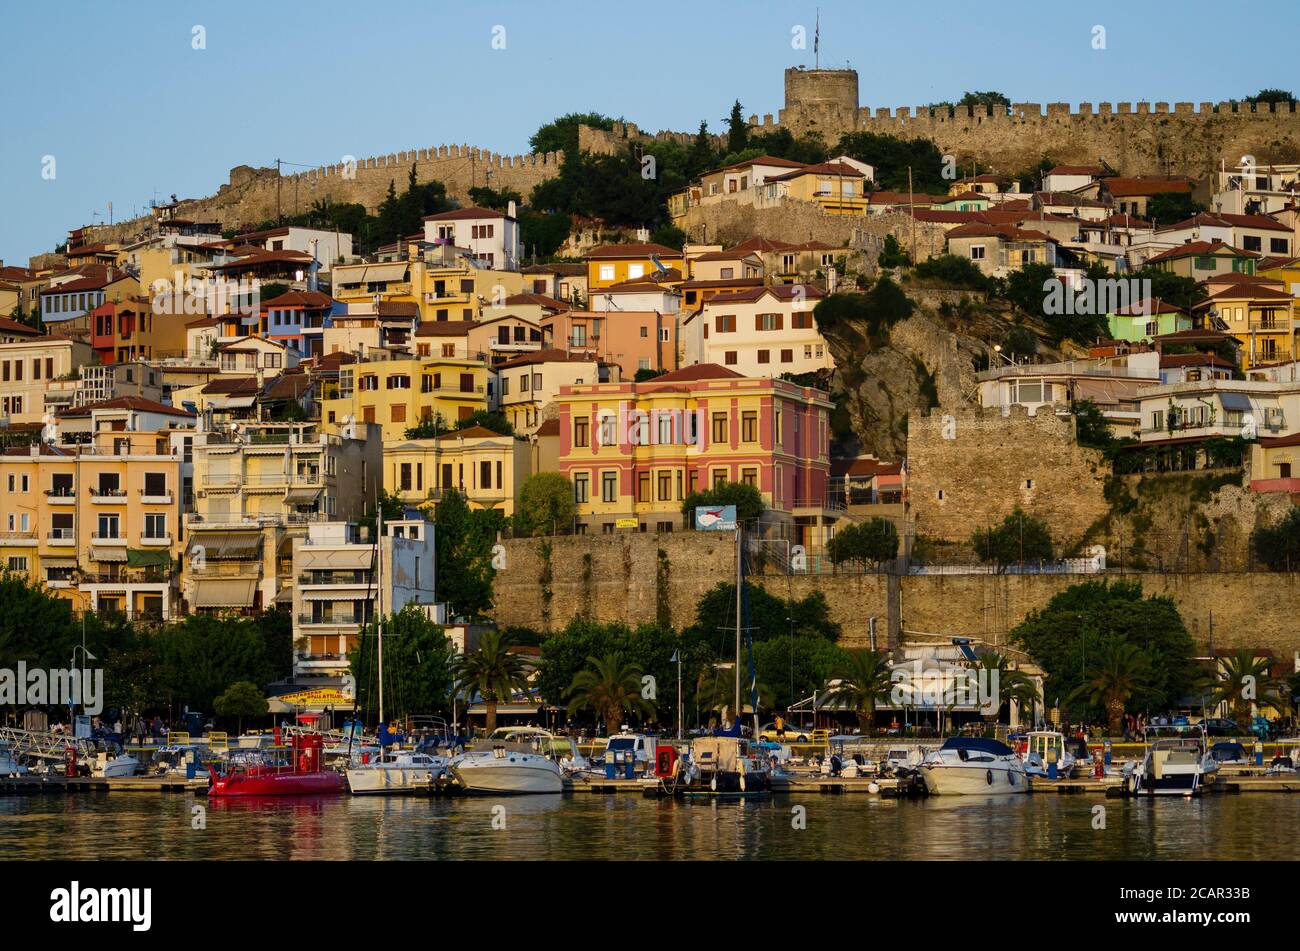 Vue générale du château dominant le paysage urbain de Kavala Grèce - photo: Geopix/Alamy stock photo Banque D'Images